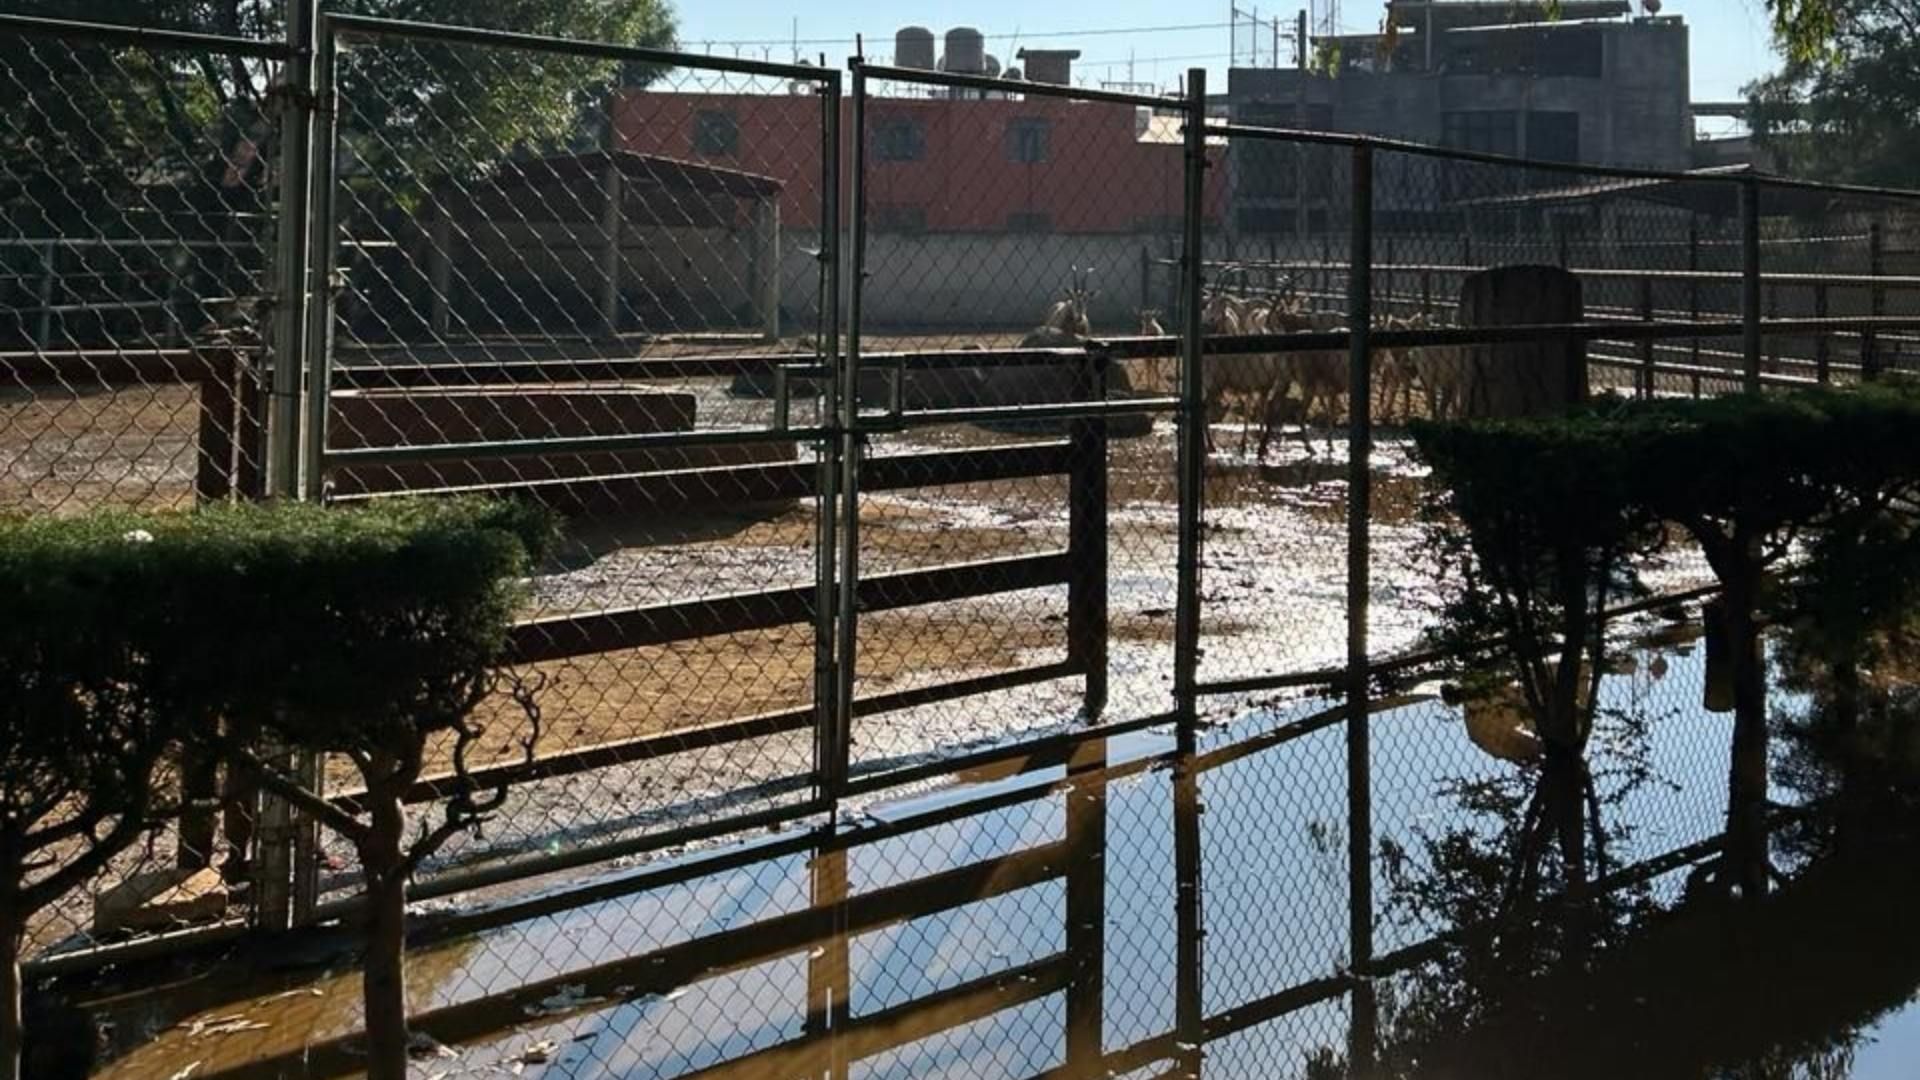 Inundan Zoológico de Morelia con Aguas Negras; Denuncian Daño Ambiental y Animales Afectados